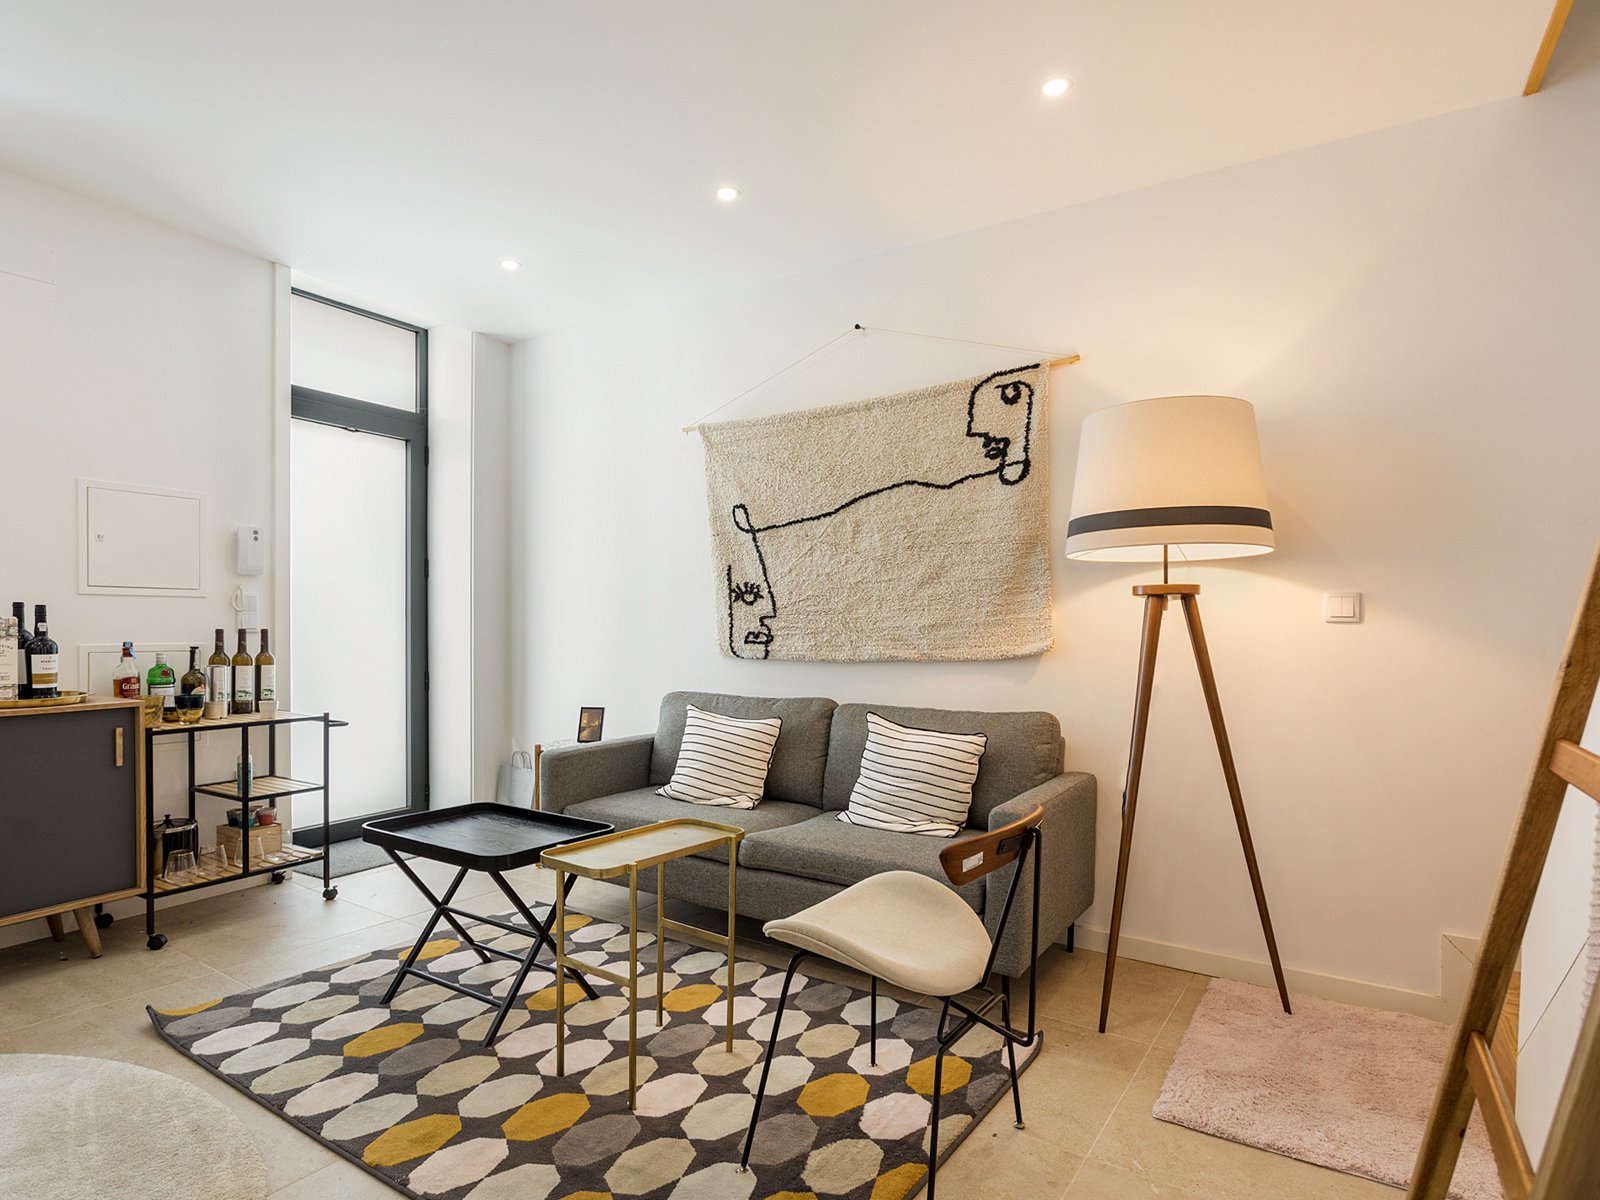 1-bedroom duplex villa new with patio in Porto city centre